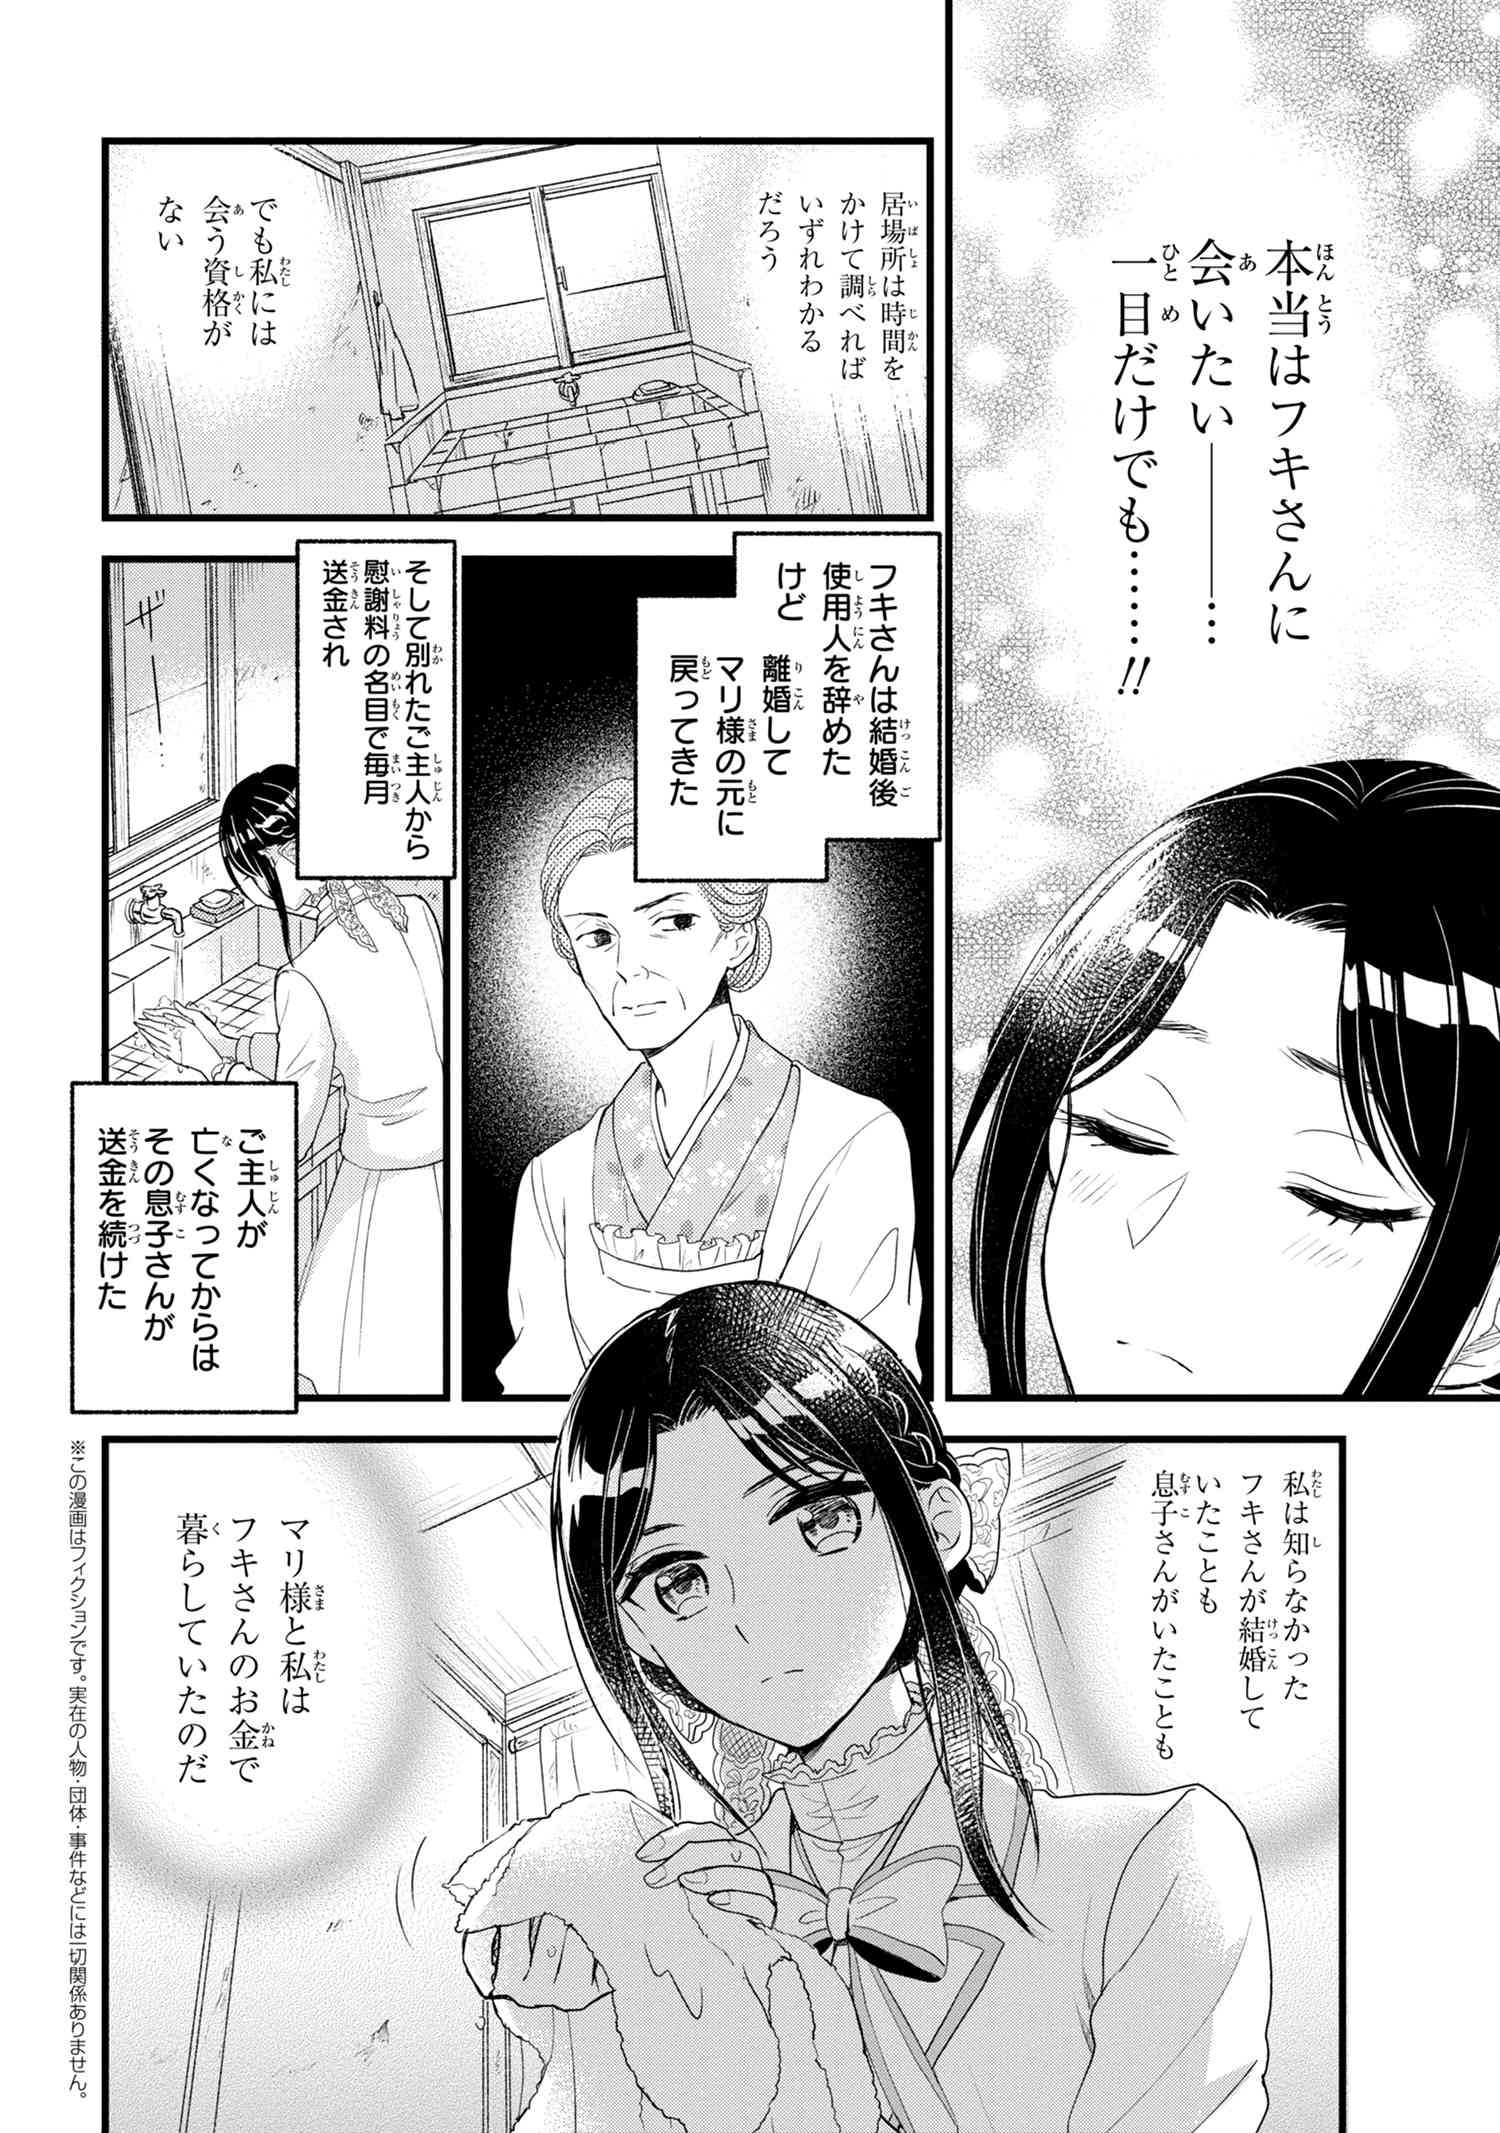 Reiko no Fuugi Akuyaku Reijou to Yobarete imasu ga, tada no Binbou Musume desu - Chapter 6-2 - Page 2